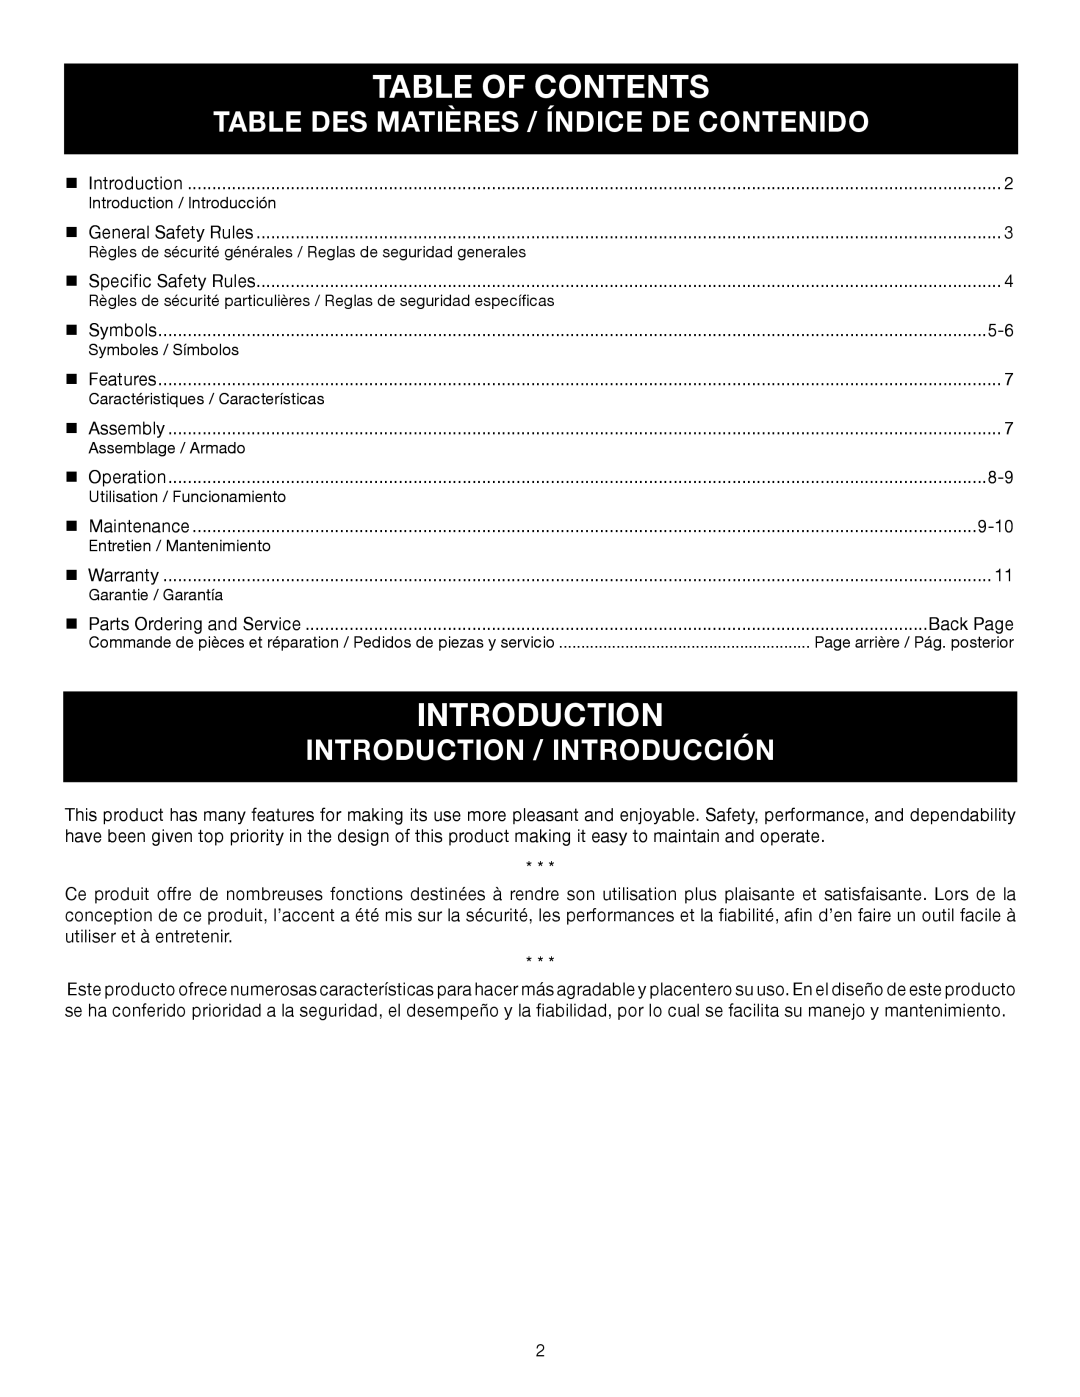 Ryobi P2605 Table Of Contents, Table Des Matières / Índice De Contenido, Introduction / Introducción 